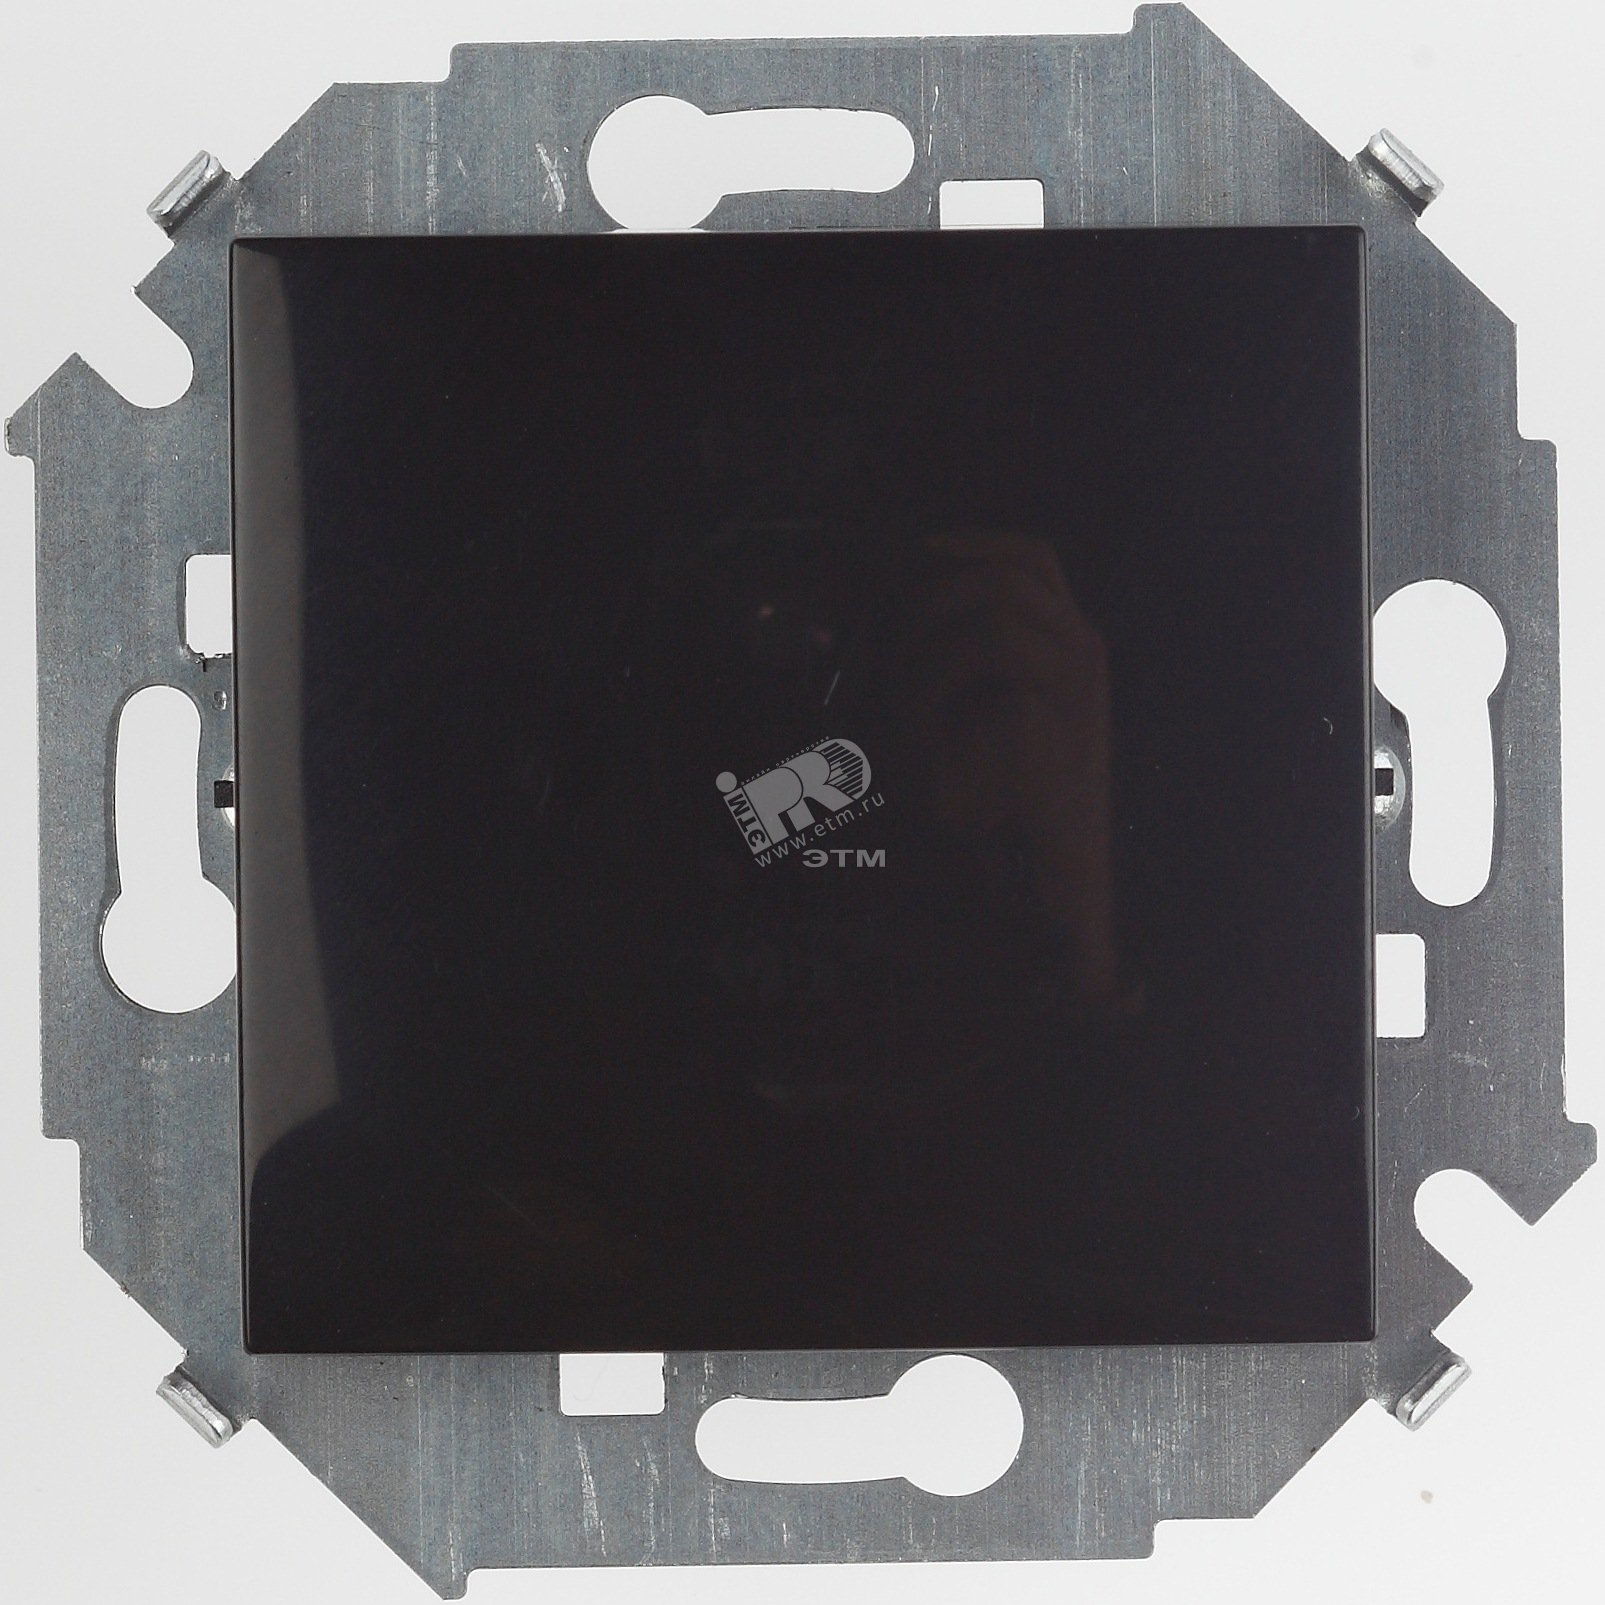 Выключатель проходной (переключатель), 16А, 250В, винтовой зажим, черный глянец 1591201-032 Simon